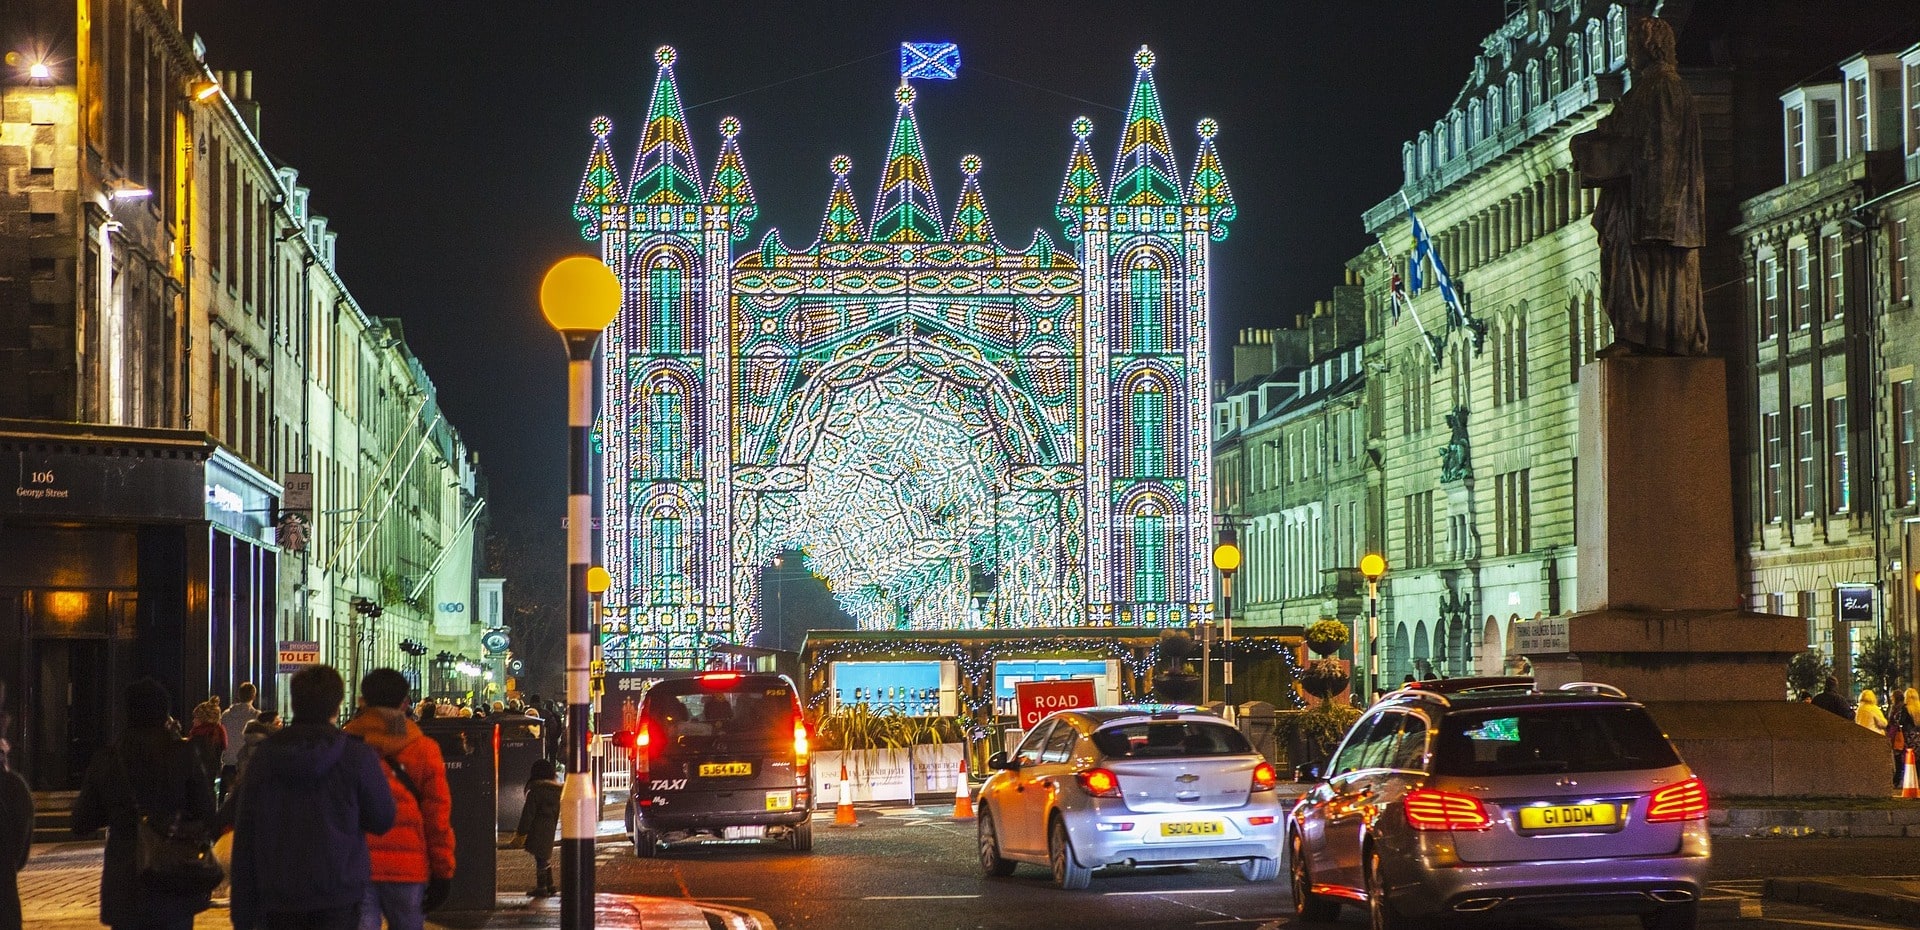 Edinburgh Christmas Lights